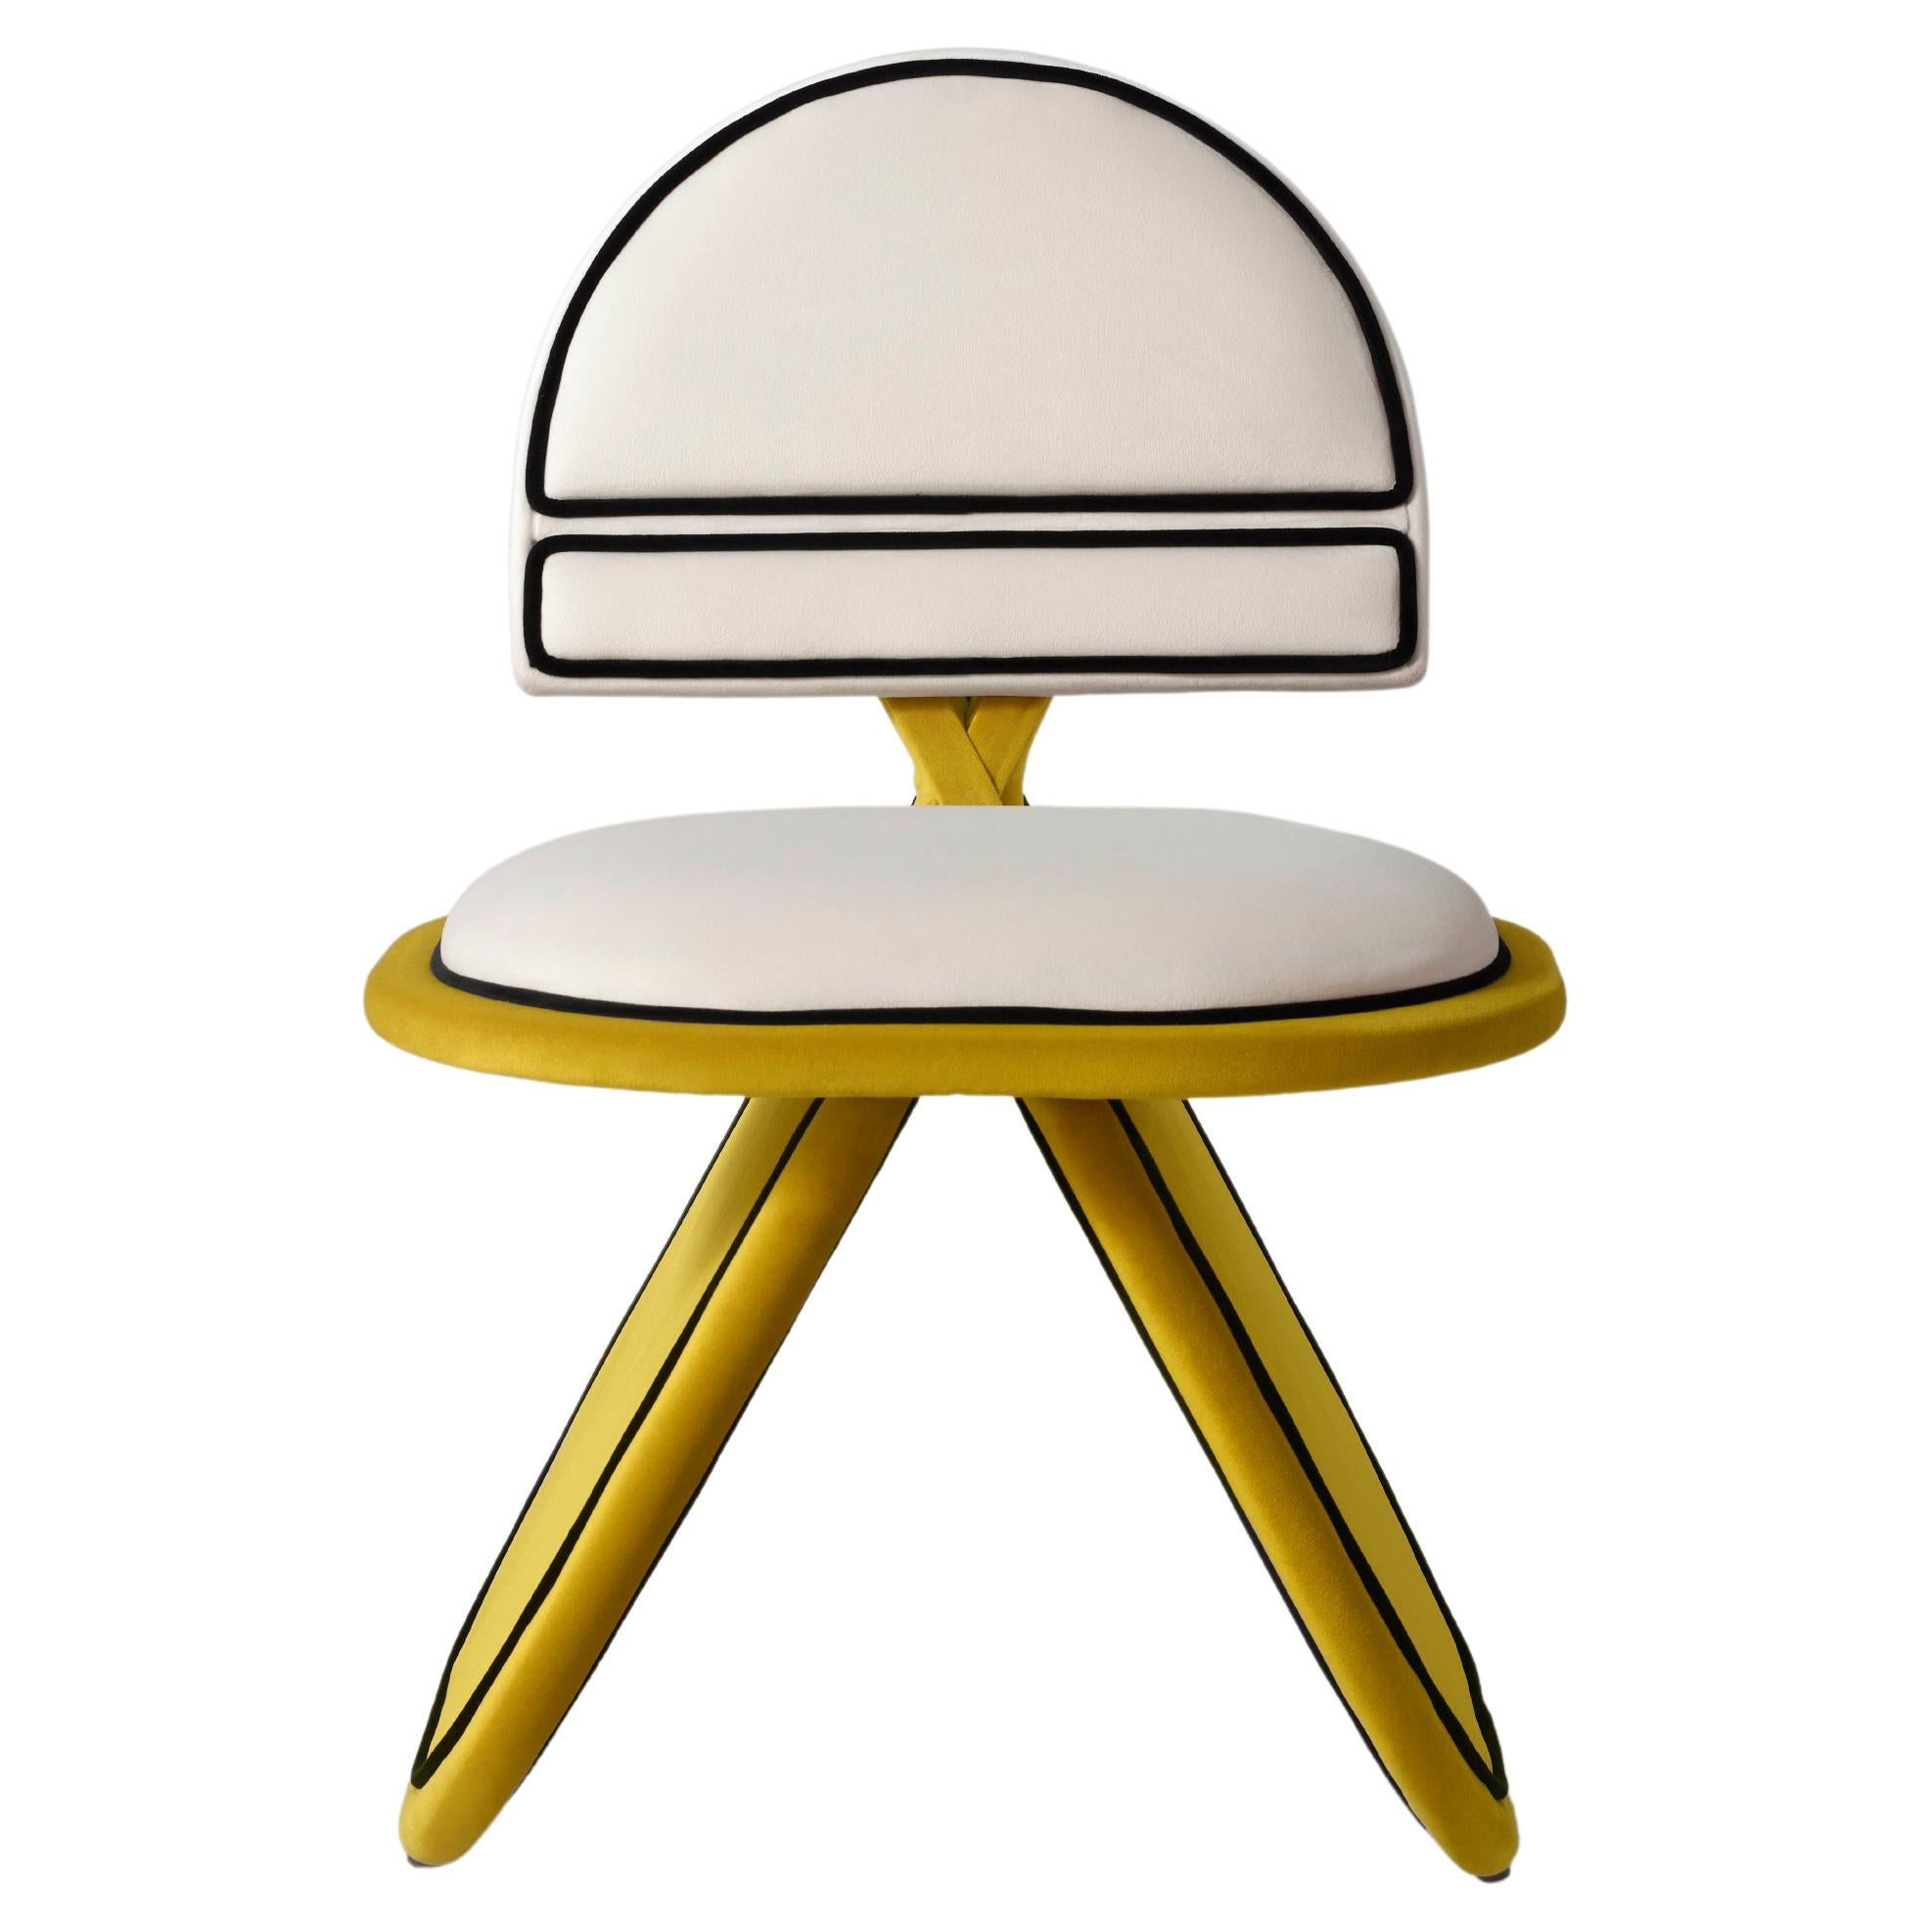 La chaise Meco est l'un de nos derniers produits, conçu par le designer espagnol Sergio Prieto. Ses formes géométriques et arrondies rappellent en quelque sorte la pureté et l'élégance japonaises, mais avec une touche picaresque et de fonds que l'on